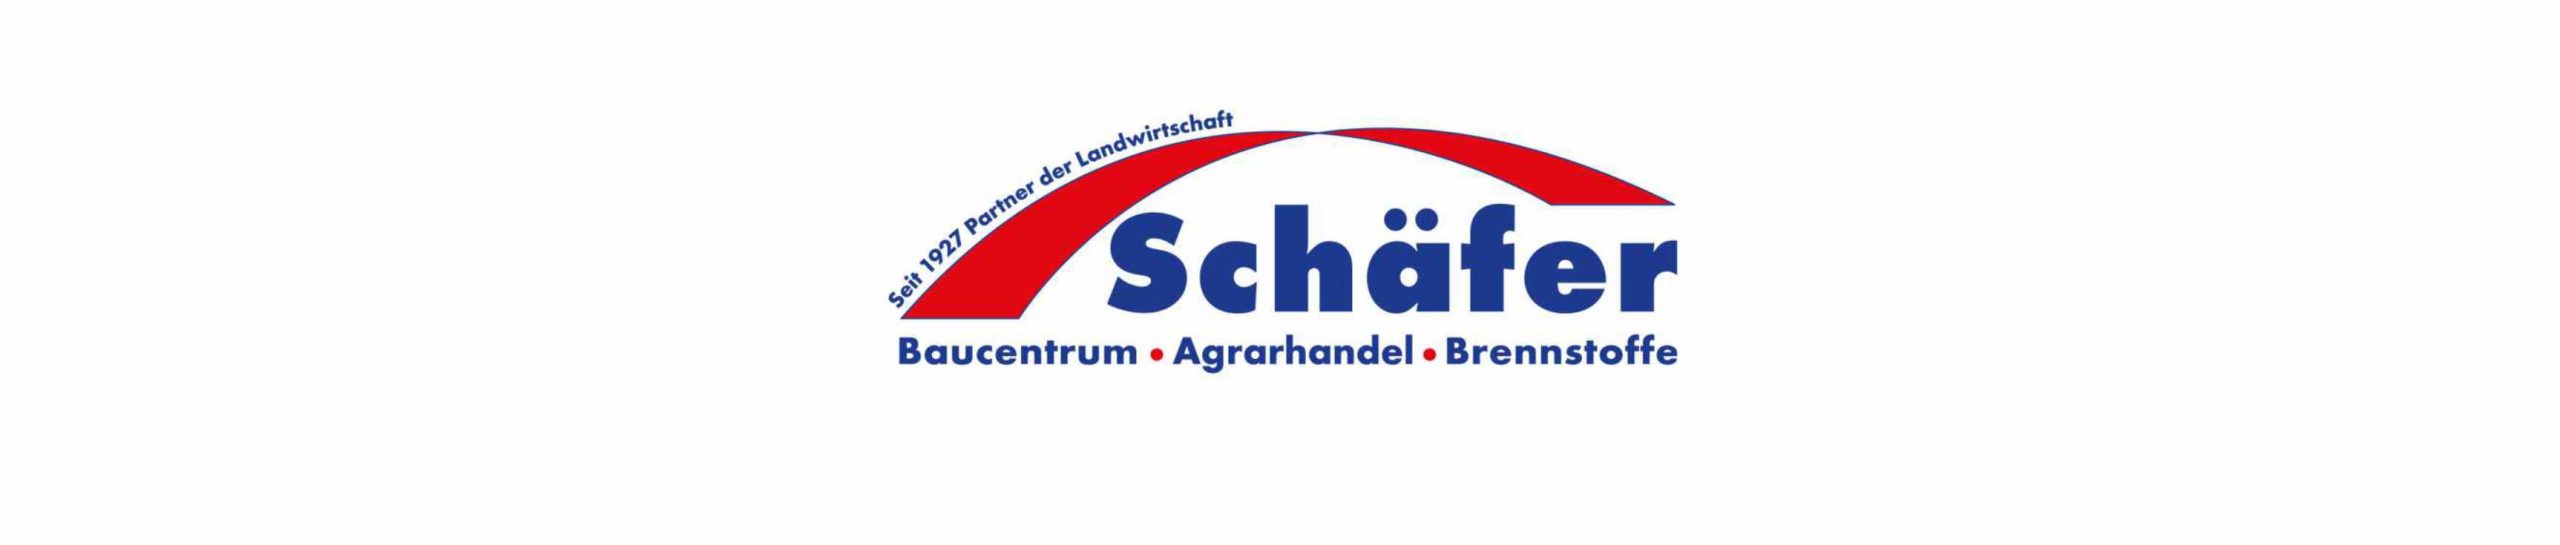 Schäfer GmbH Baucentrum Sontra